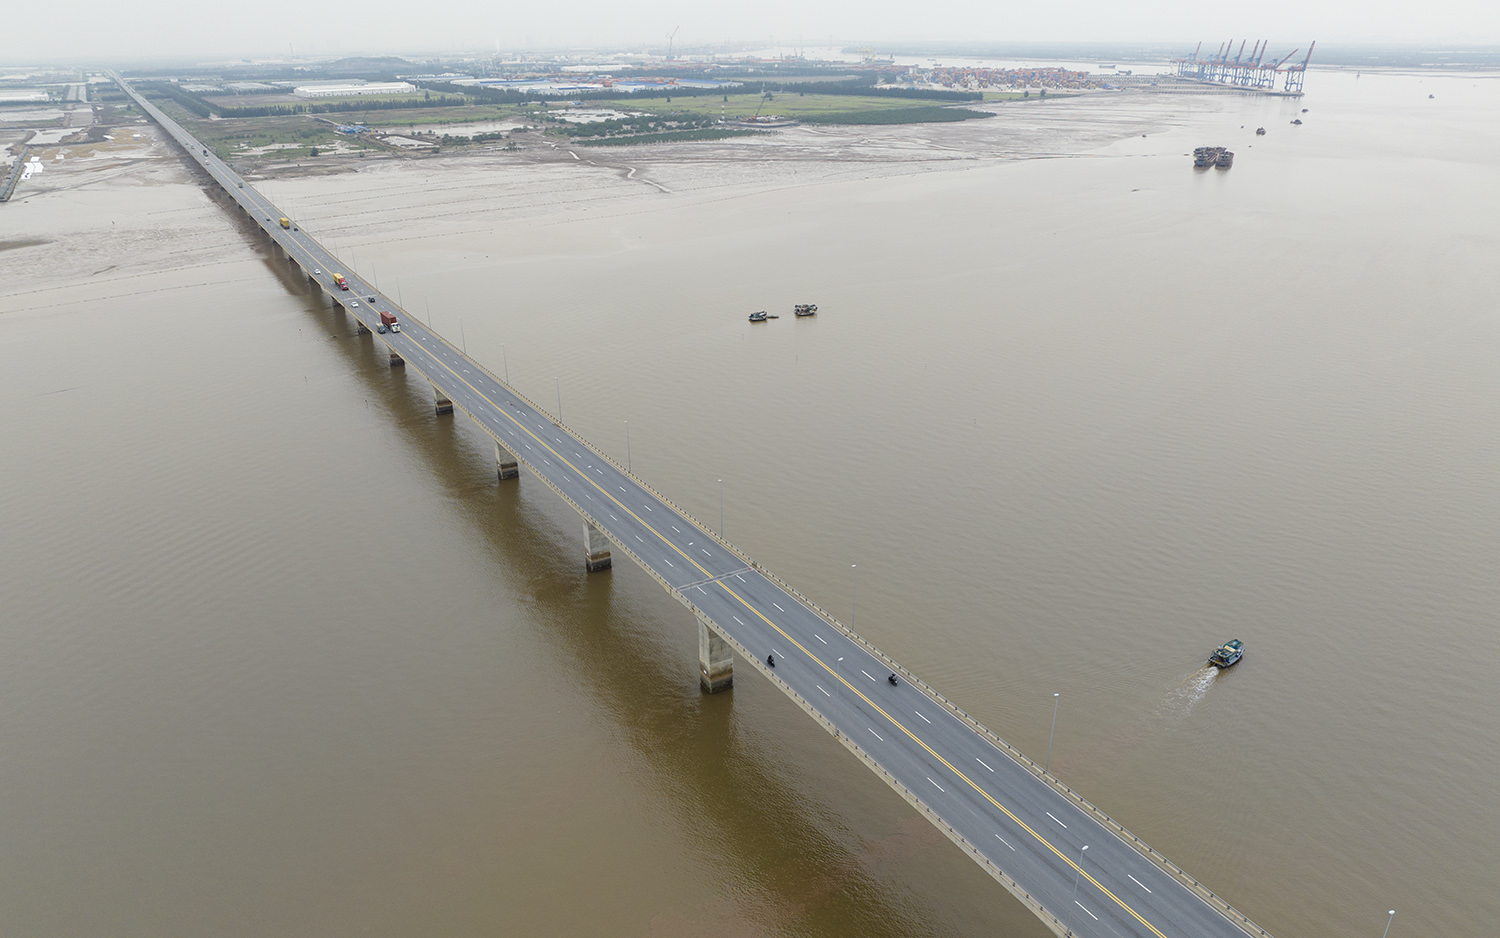 Cầu vượt biển dài nhất Việt Nam nhìn từ trên cao - 2